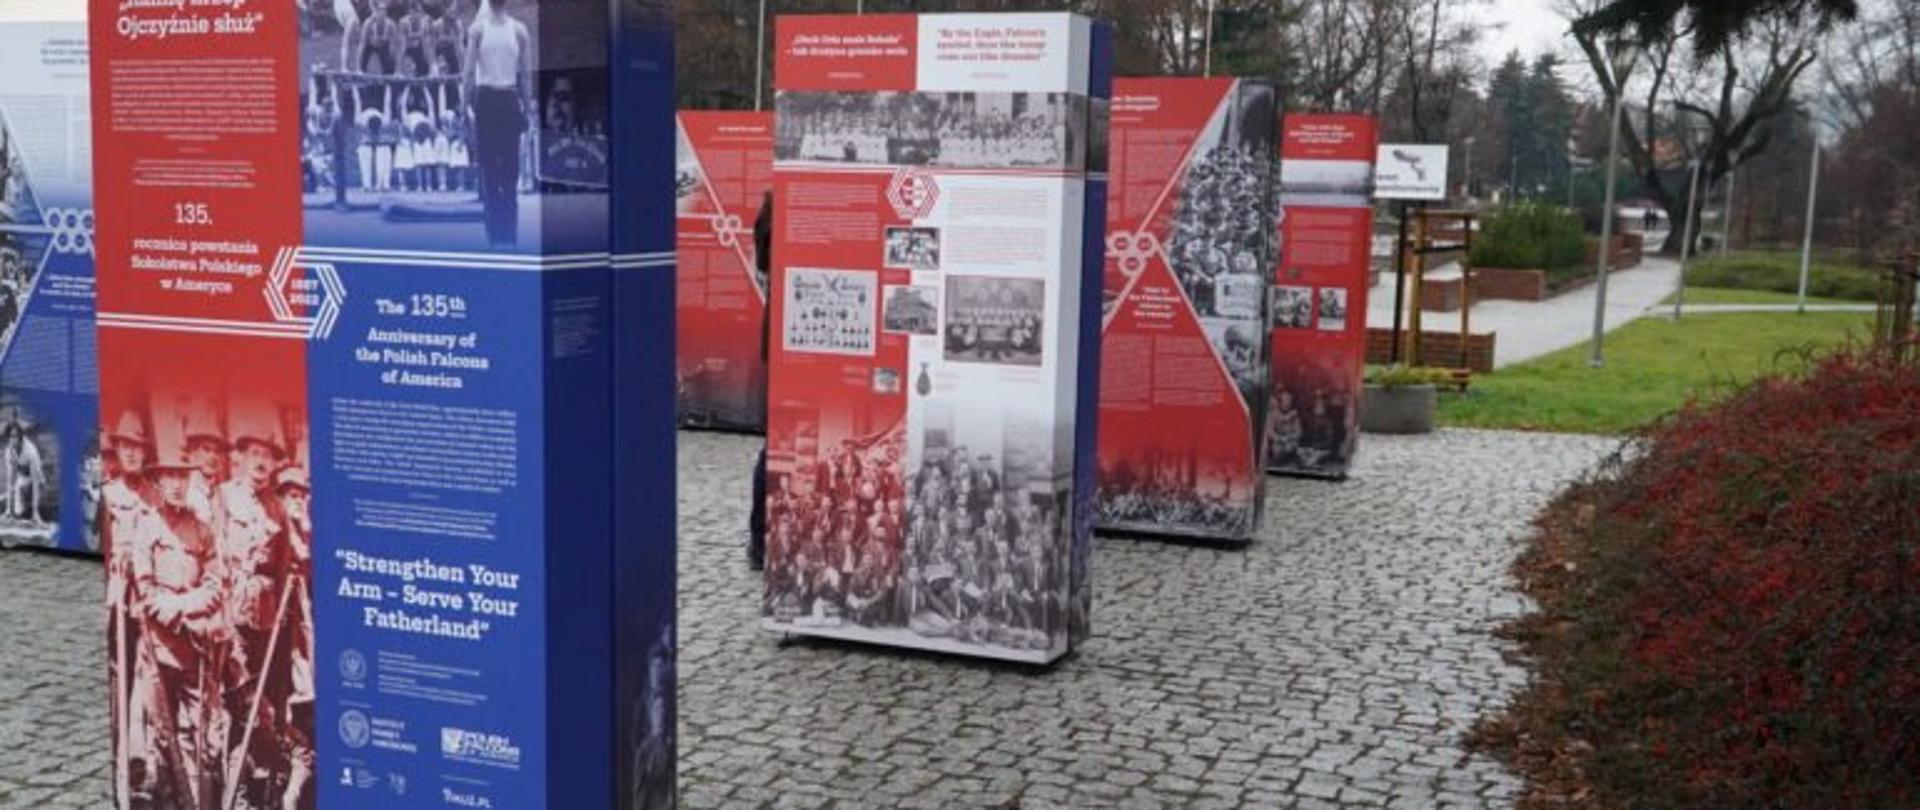 Fragment wystawy z okazji 135. rocznica powstania Sokolstwa Polskiego w Ameryce zlokalizowanej tymczasowo w Parku Jedności Polonii z Macierzą w Rzeszowie 